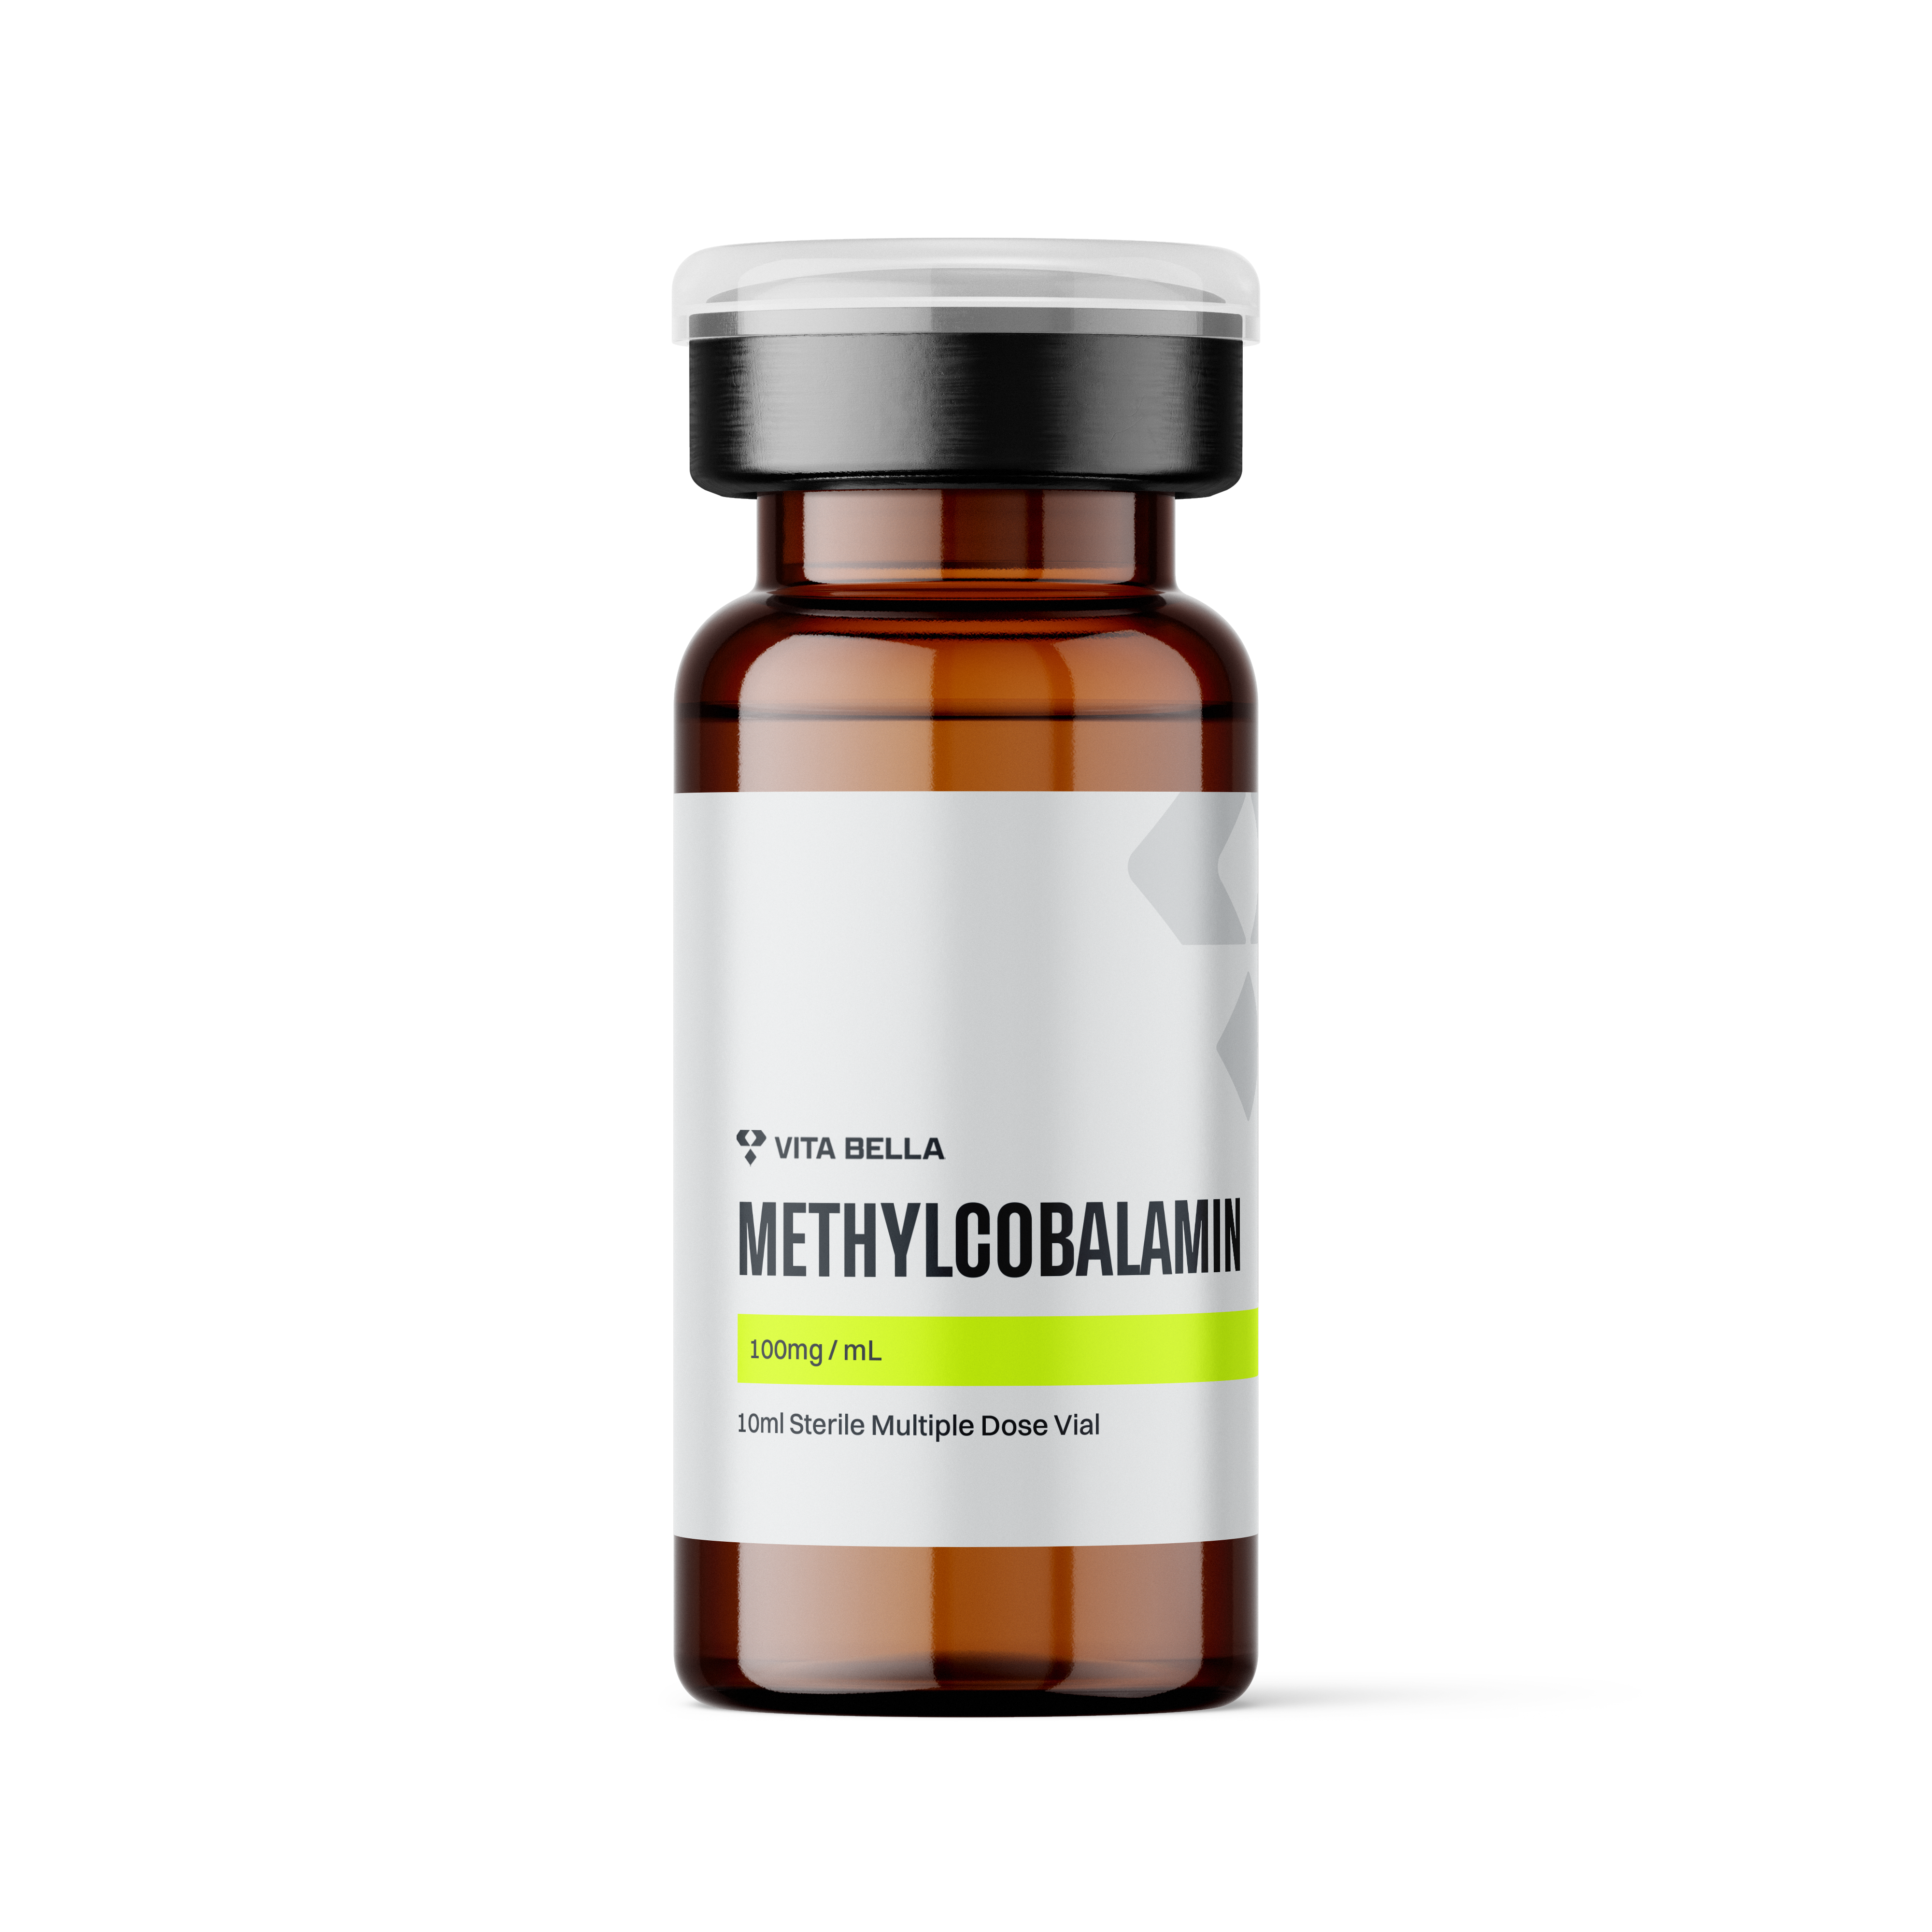 Methylcobalamin vial